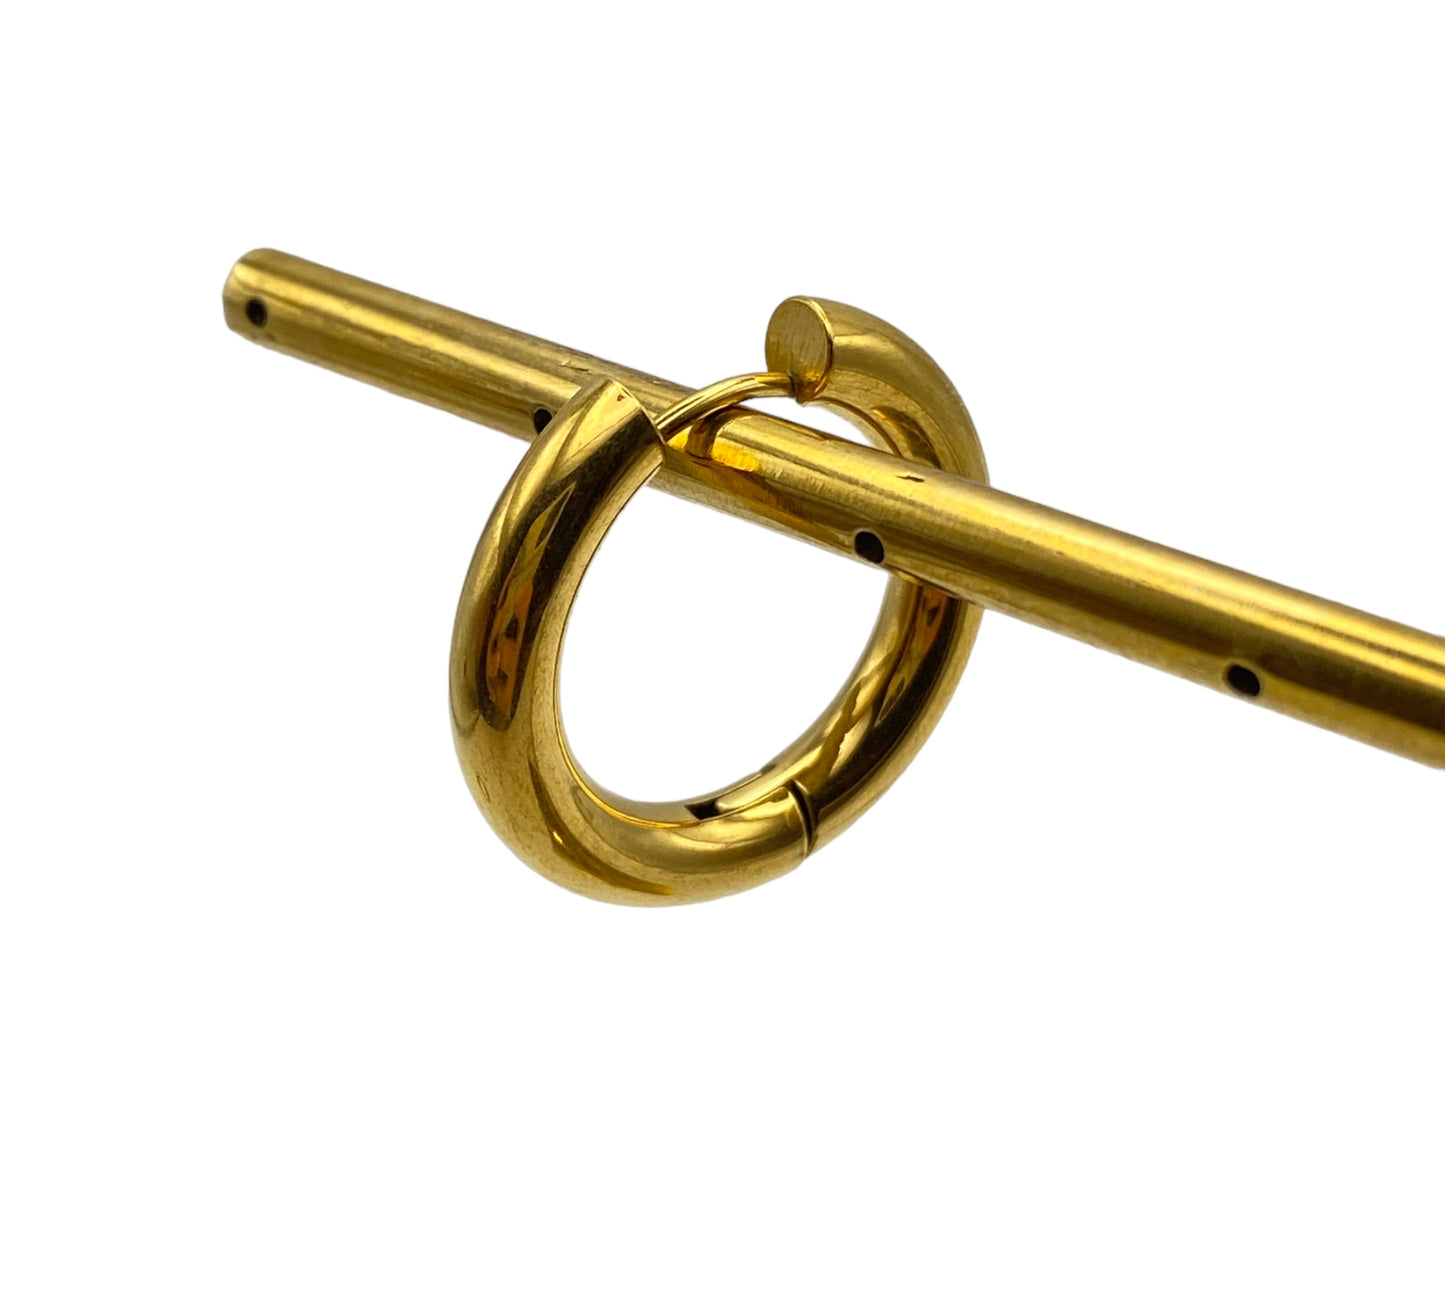 "CLEAR" gold plated essential hoop earrings